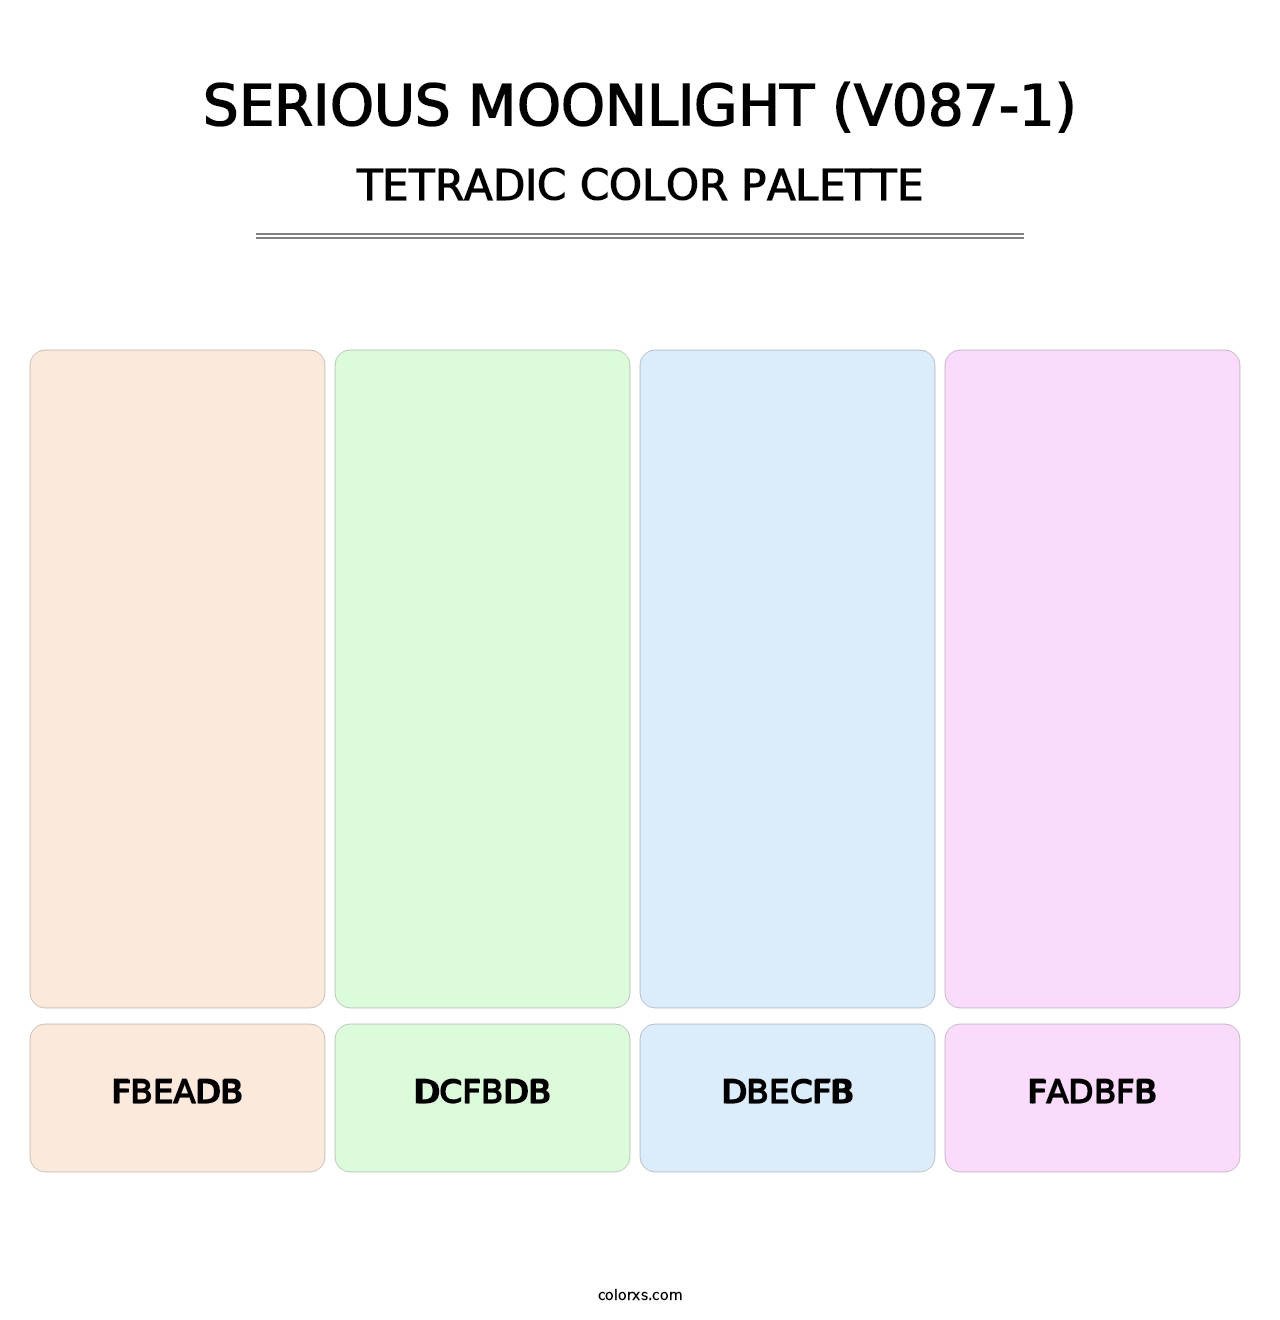 Serious Moonlight (V087-1) - Tetradic Color Palette